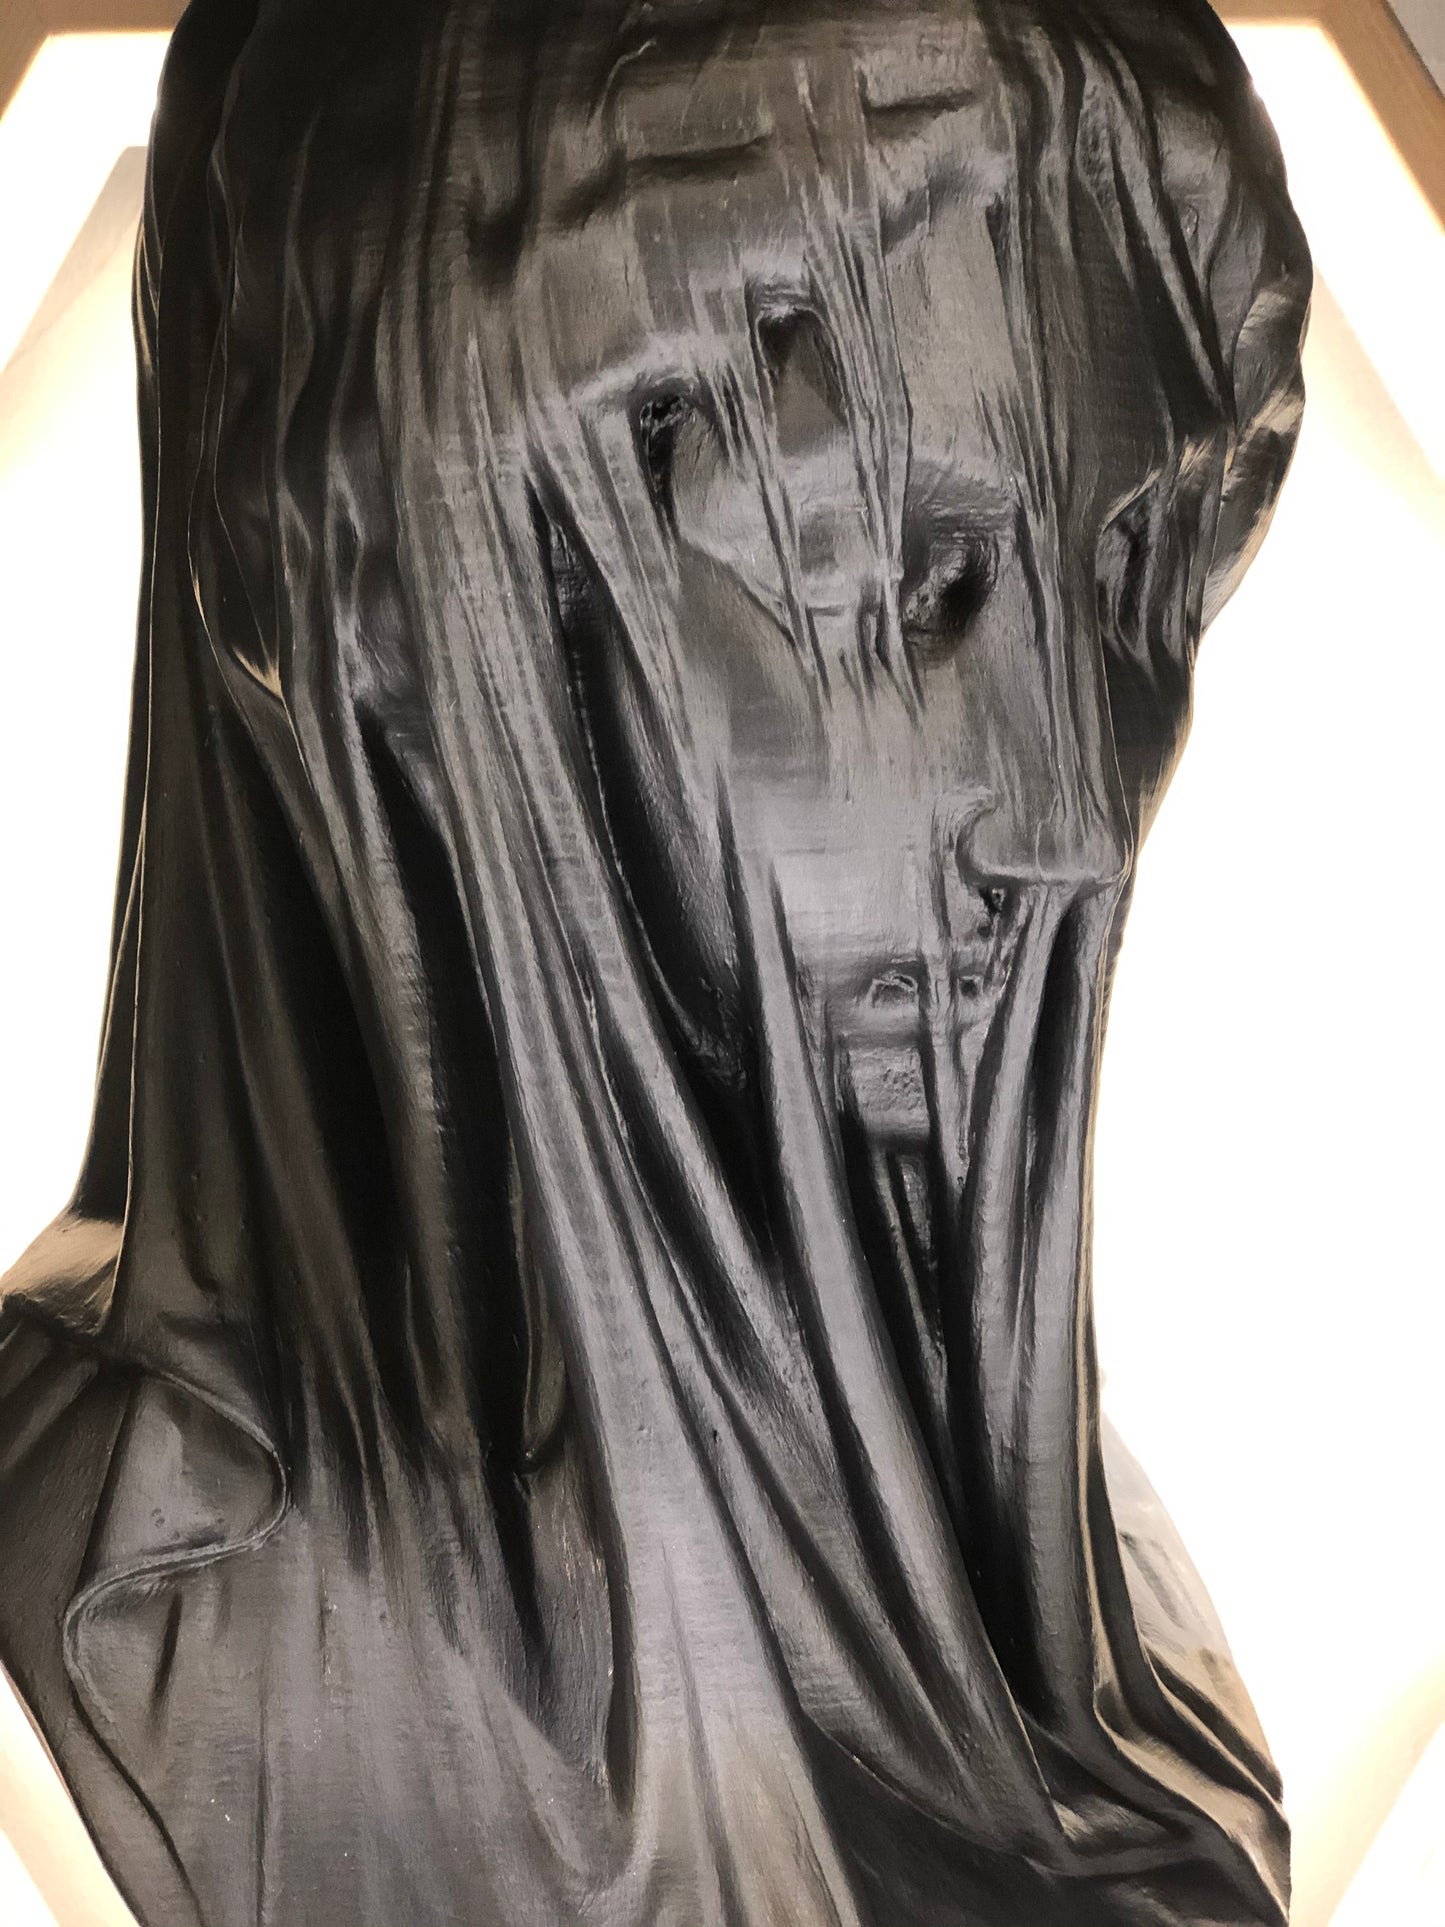 Mariam 'Black' Pop Art Sculpture, Modern Home Decor